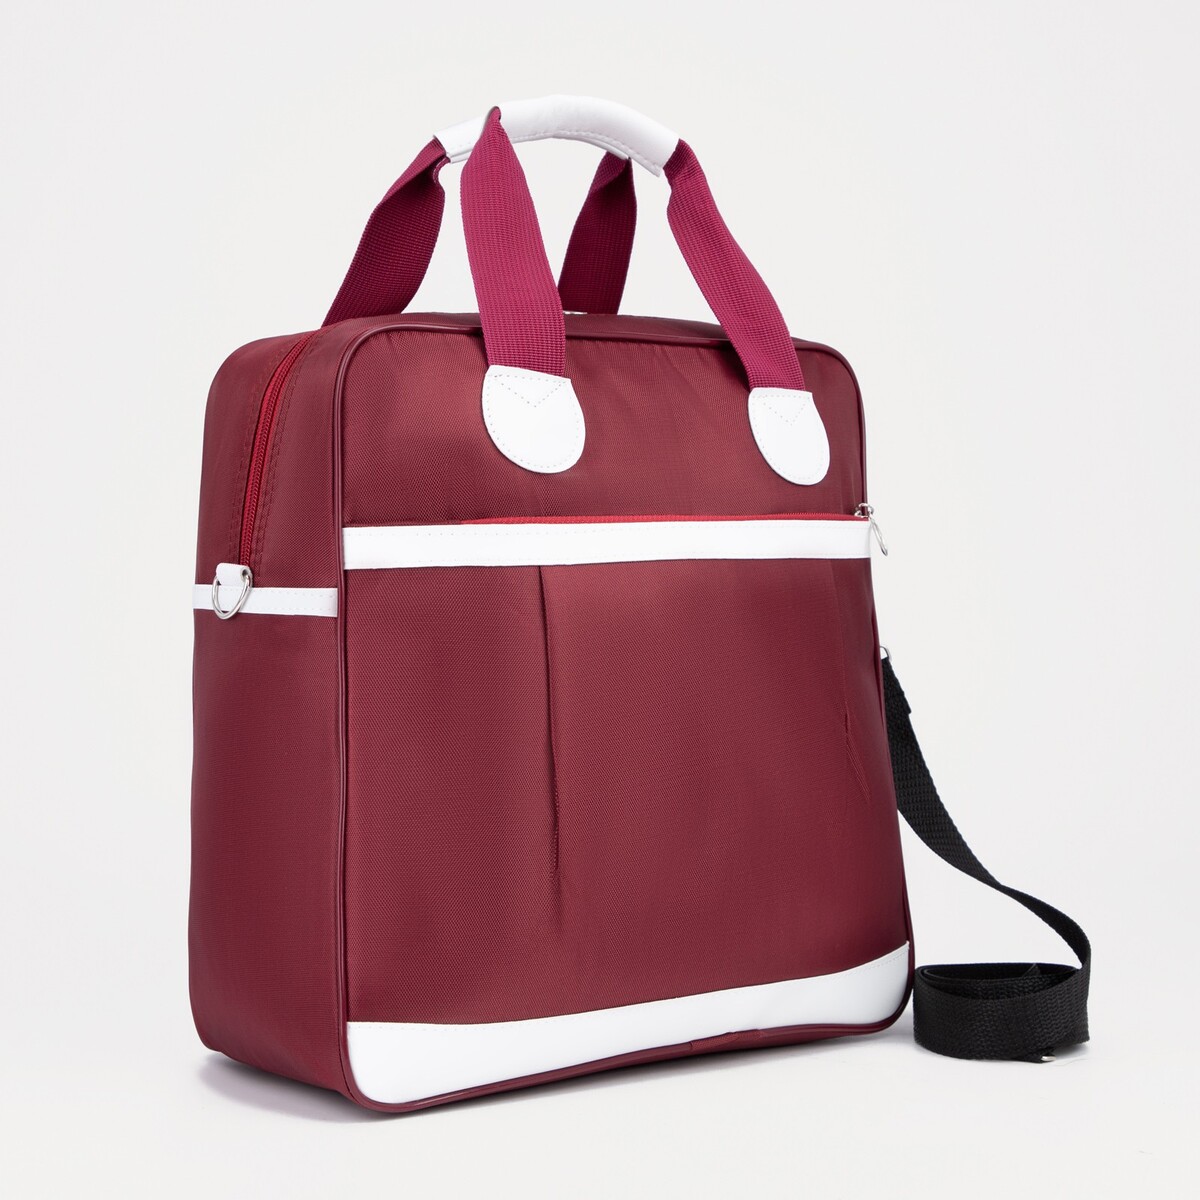 Сумка дорожная на молнии, наружный карман, держатель для чемодана, цвет бордовый/белый сумка спортивная на молнии наружный карман держатель для чемодана серый